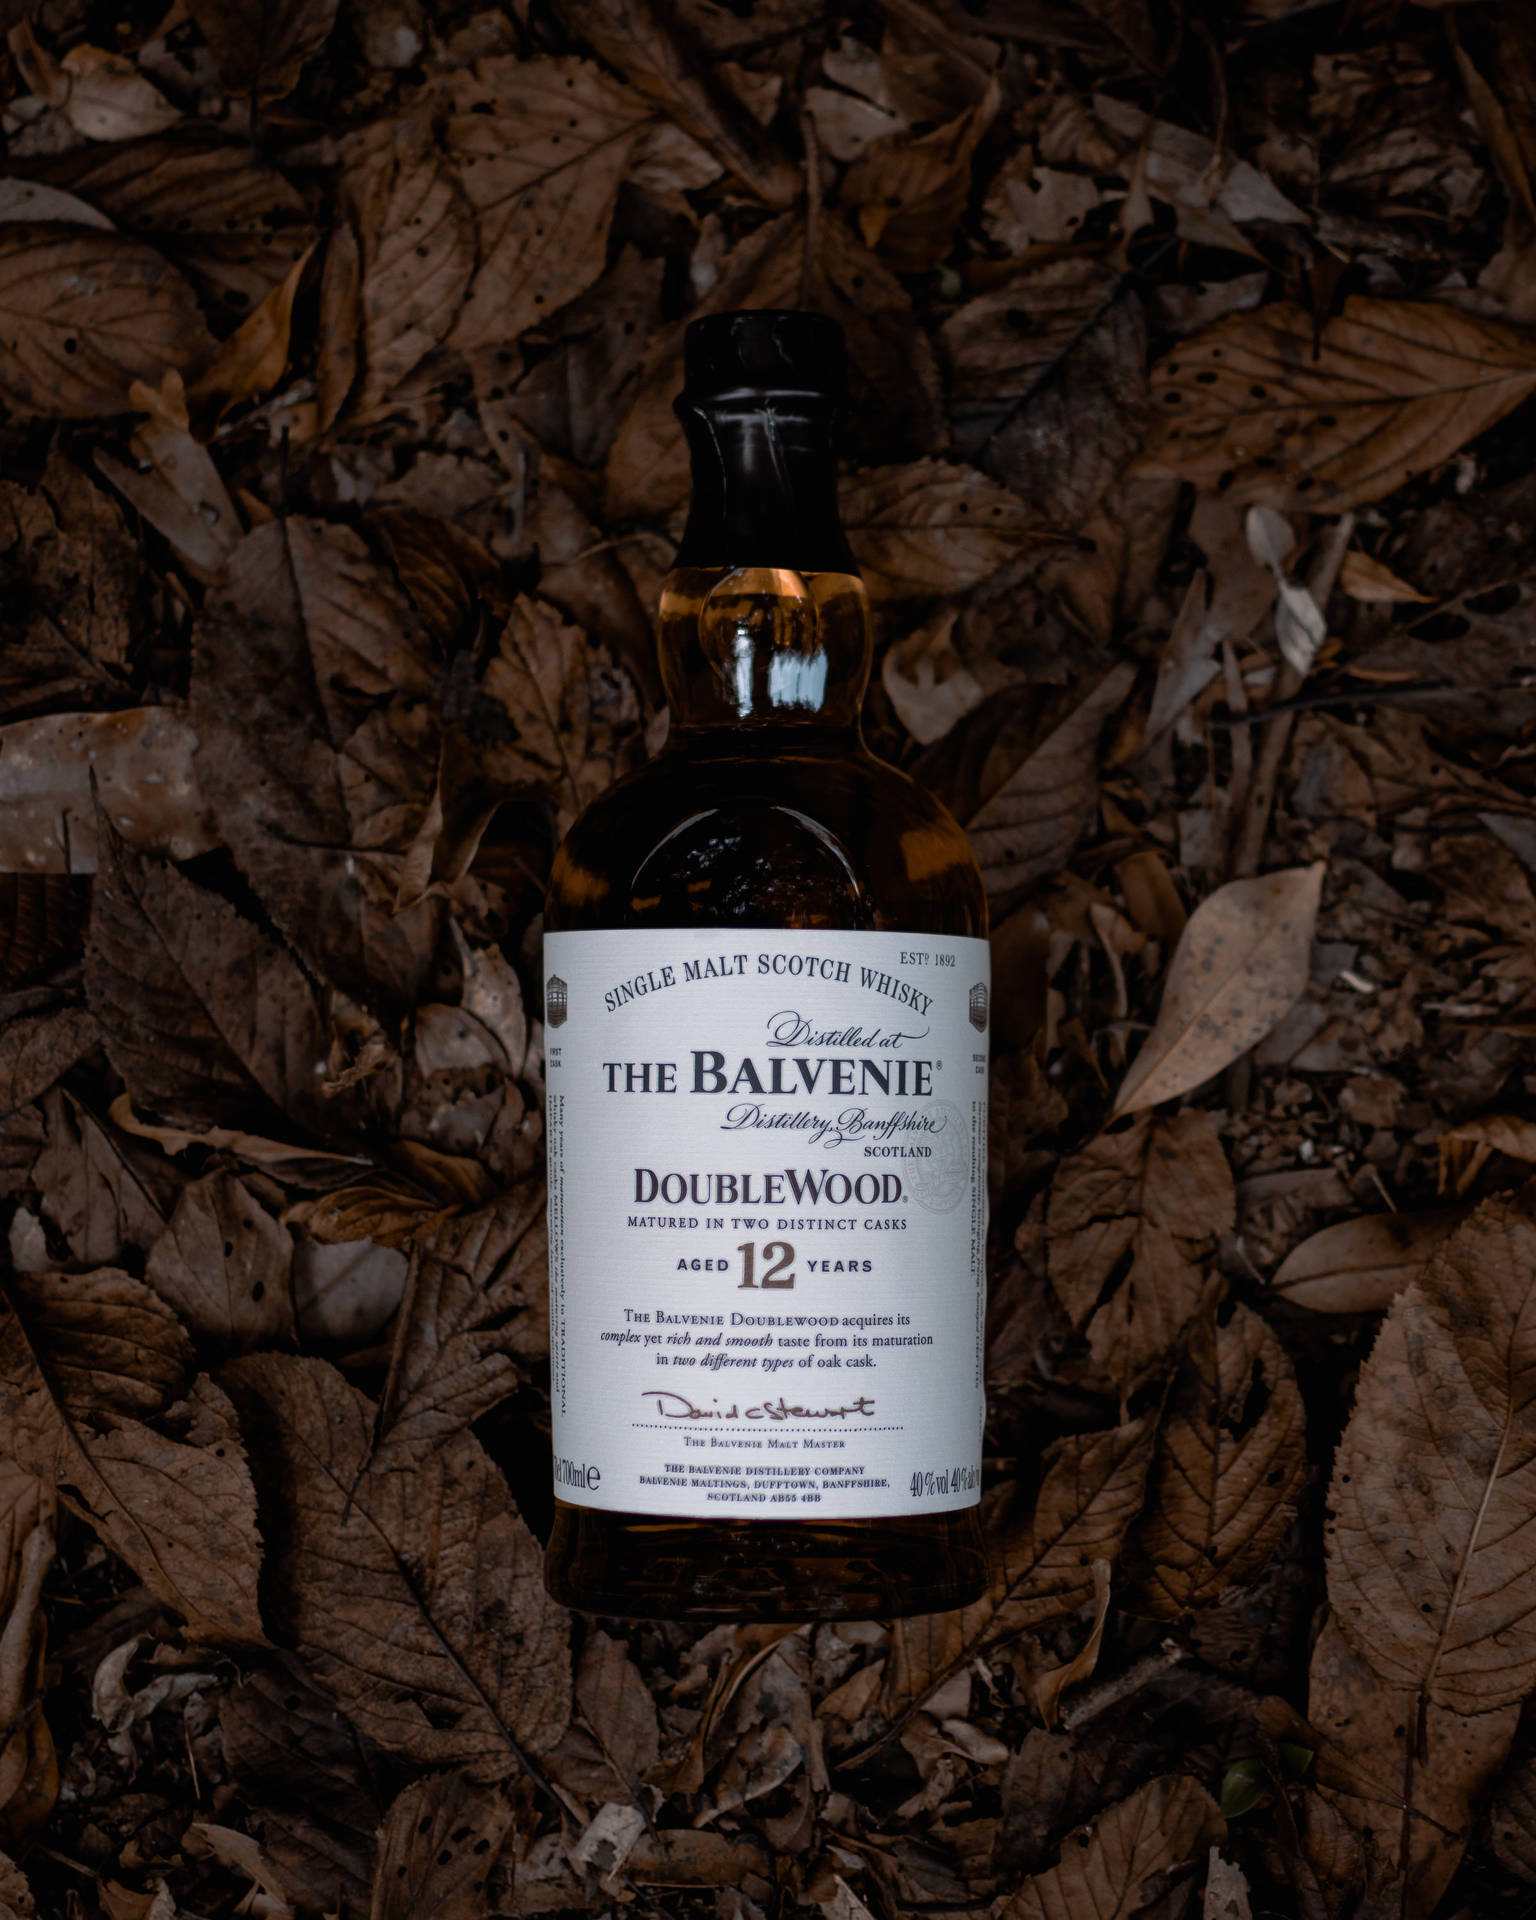 "A timeless bottle of The Balvenie Whiskey settles amongst the fallen Autumn leaves." Wallpaper